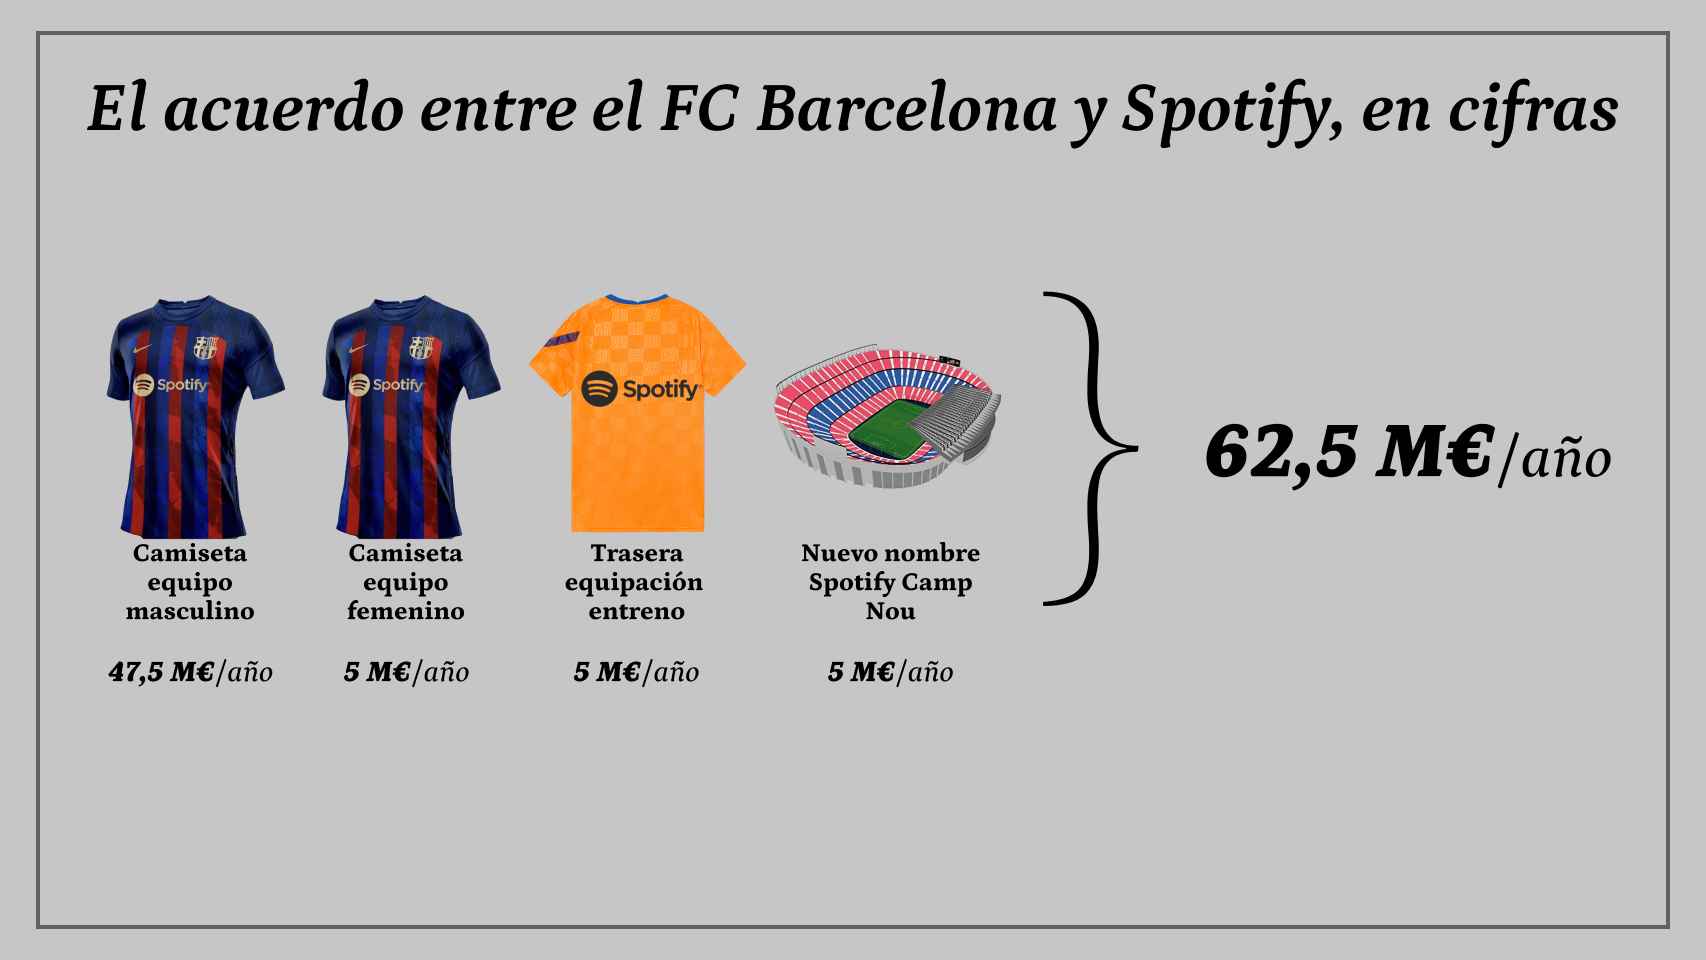 Desglose del patrocinio del FC Barcelona y Spotify